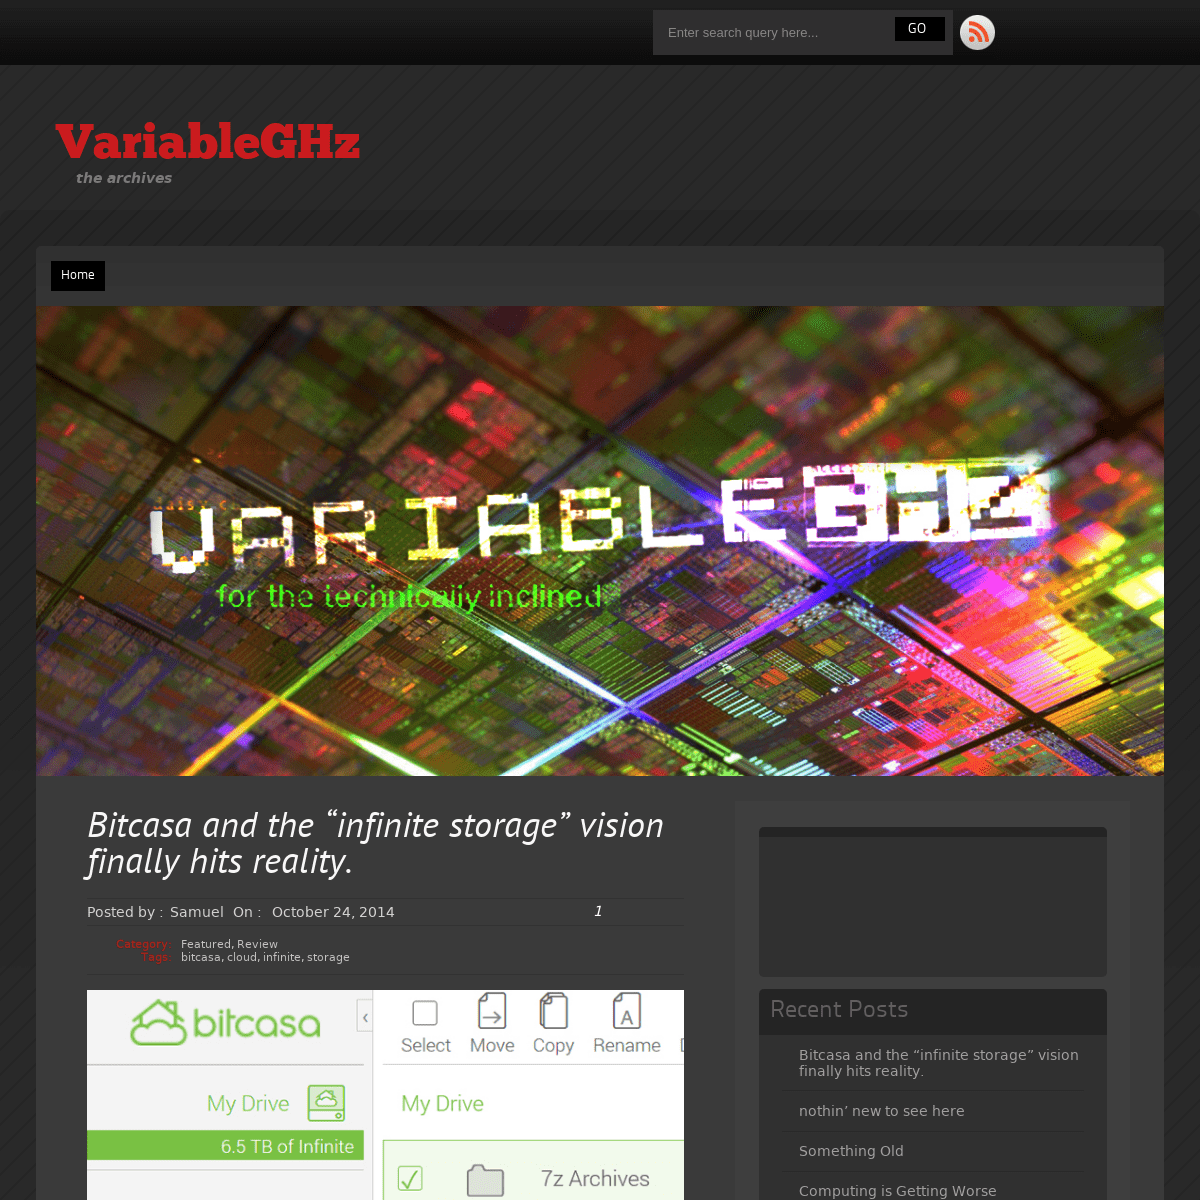 A complete backup of variableghz.com